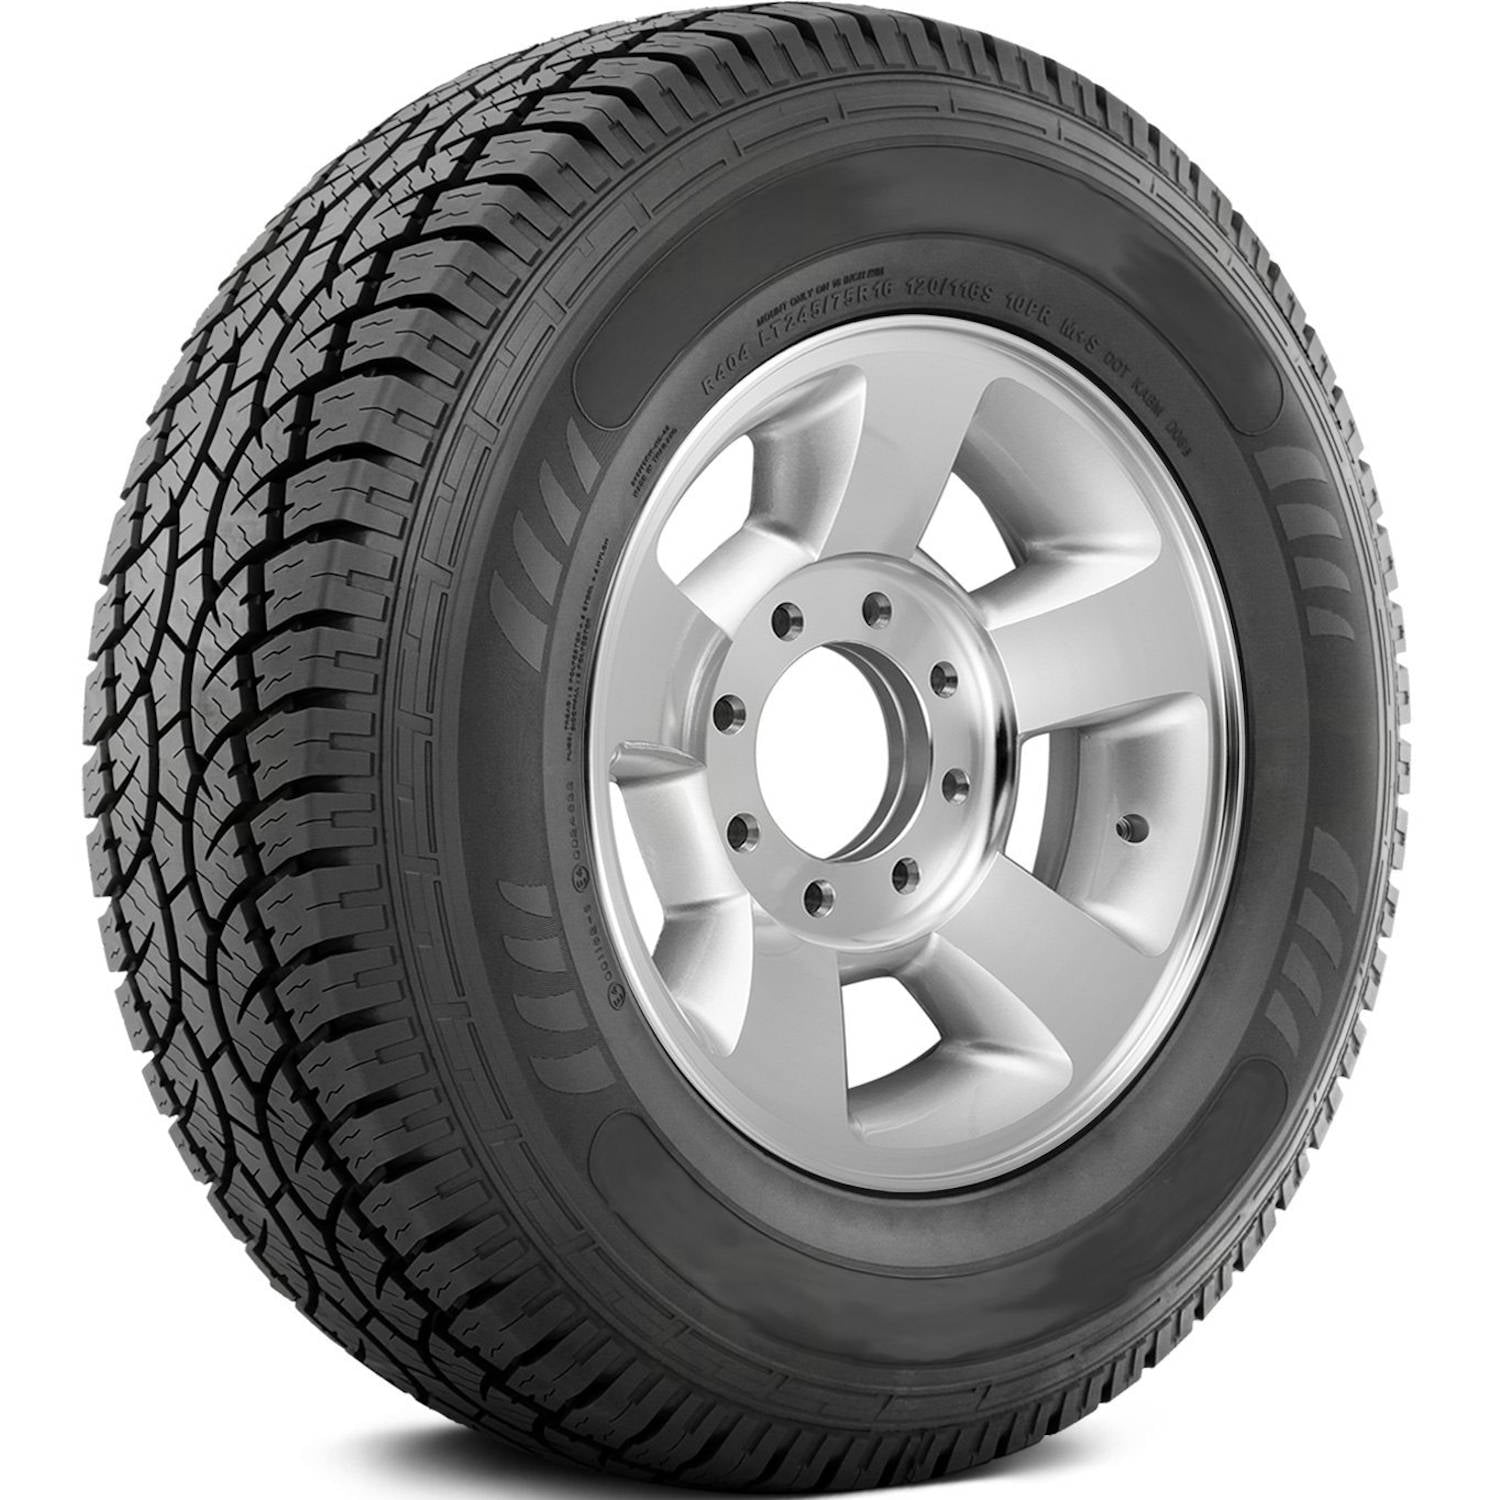 AMERICUS RUGGED ALL TERRAIN 265/70R17 (31.7X10.4R 17) Tires